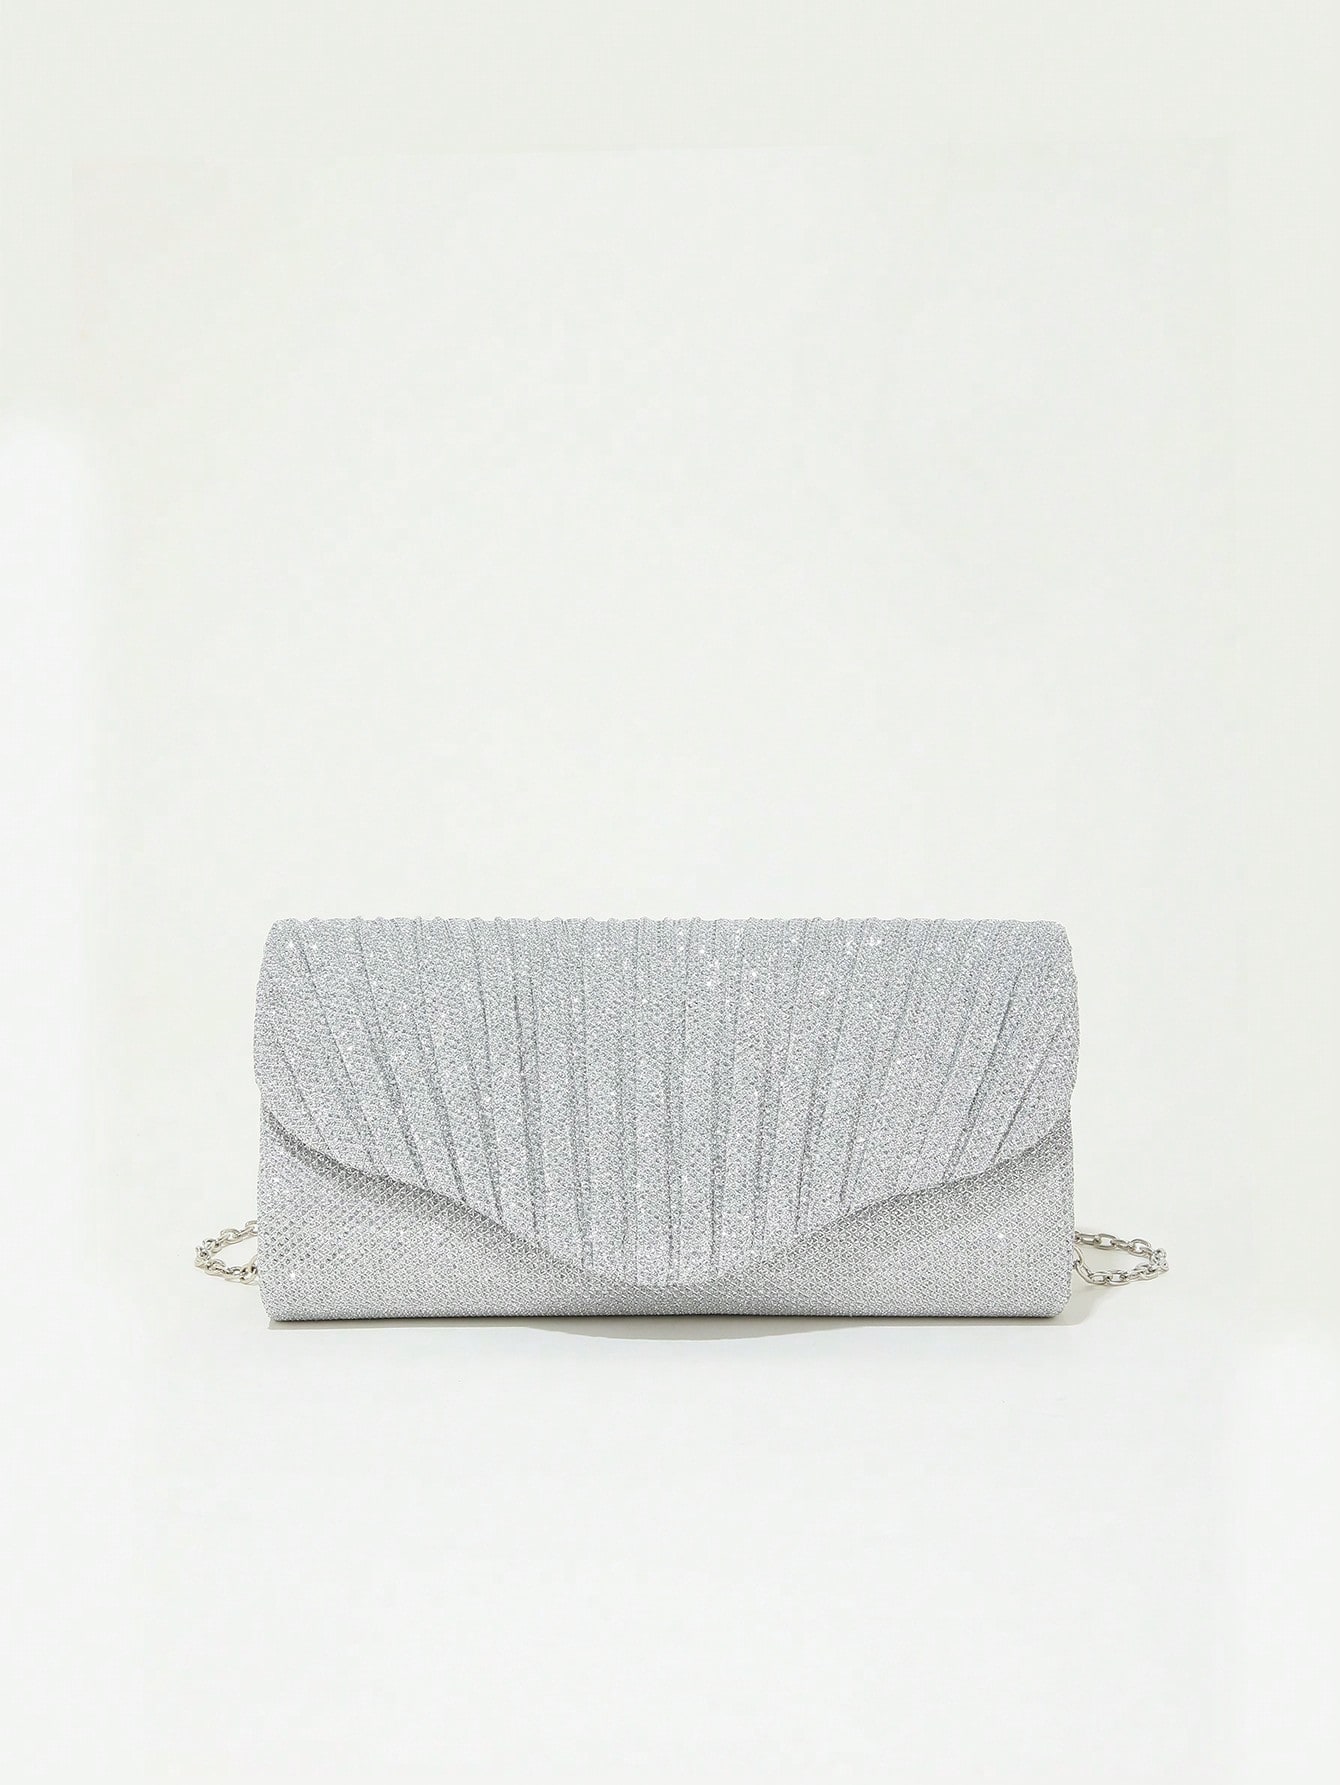 Мини-сумка-конверт с гламурной плиссированной деталью и цепочкой с блестками, серебро